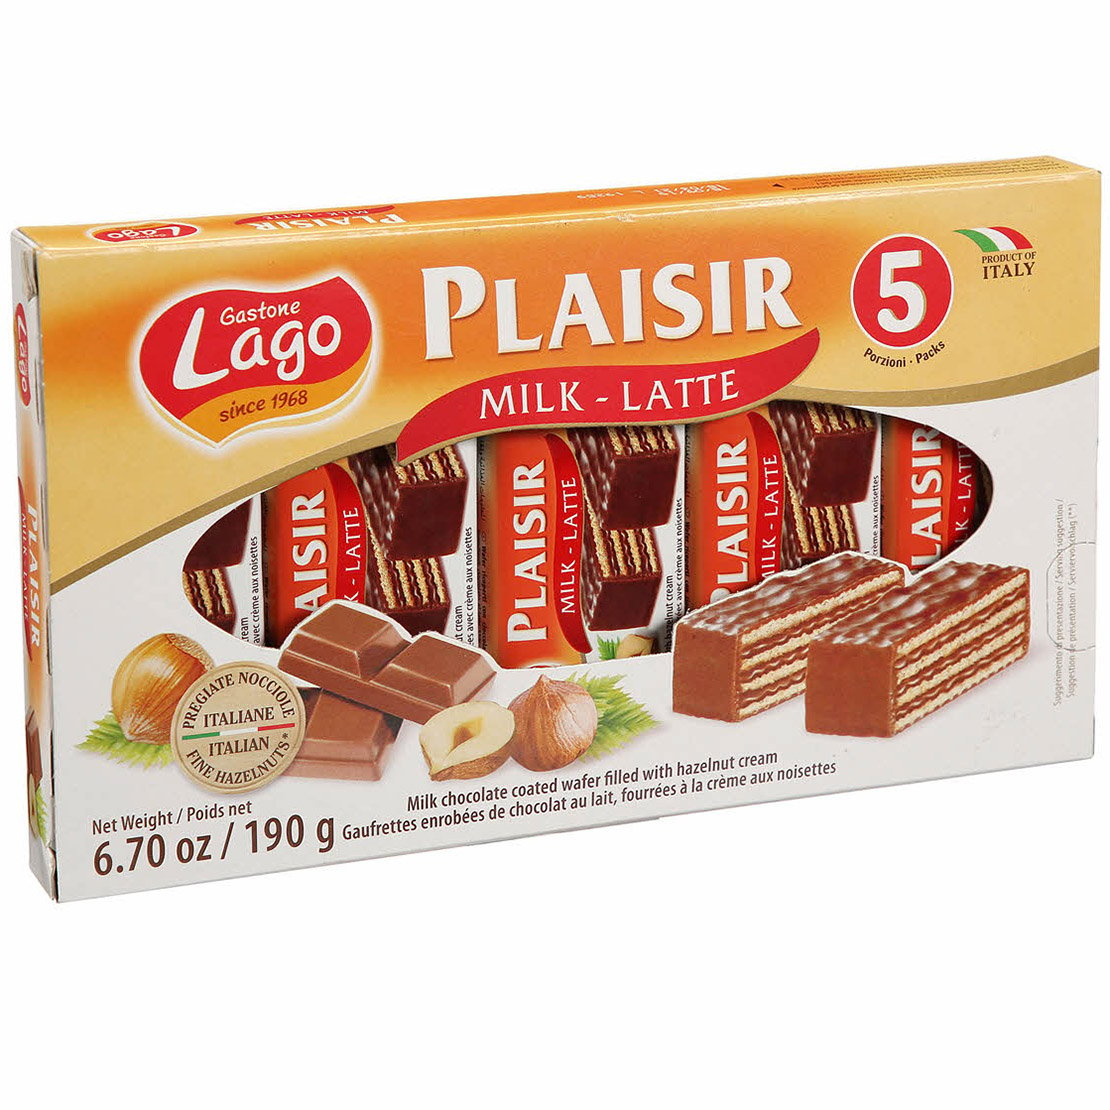 Вафли Gastone Lagо Plaisir Milk-Latte с молочным кремом и лесным орехом, 190 г (756008) - фото 1